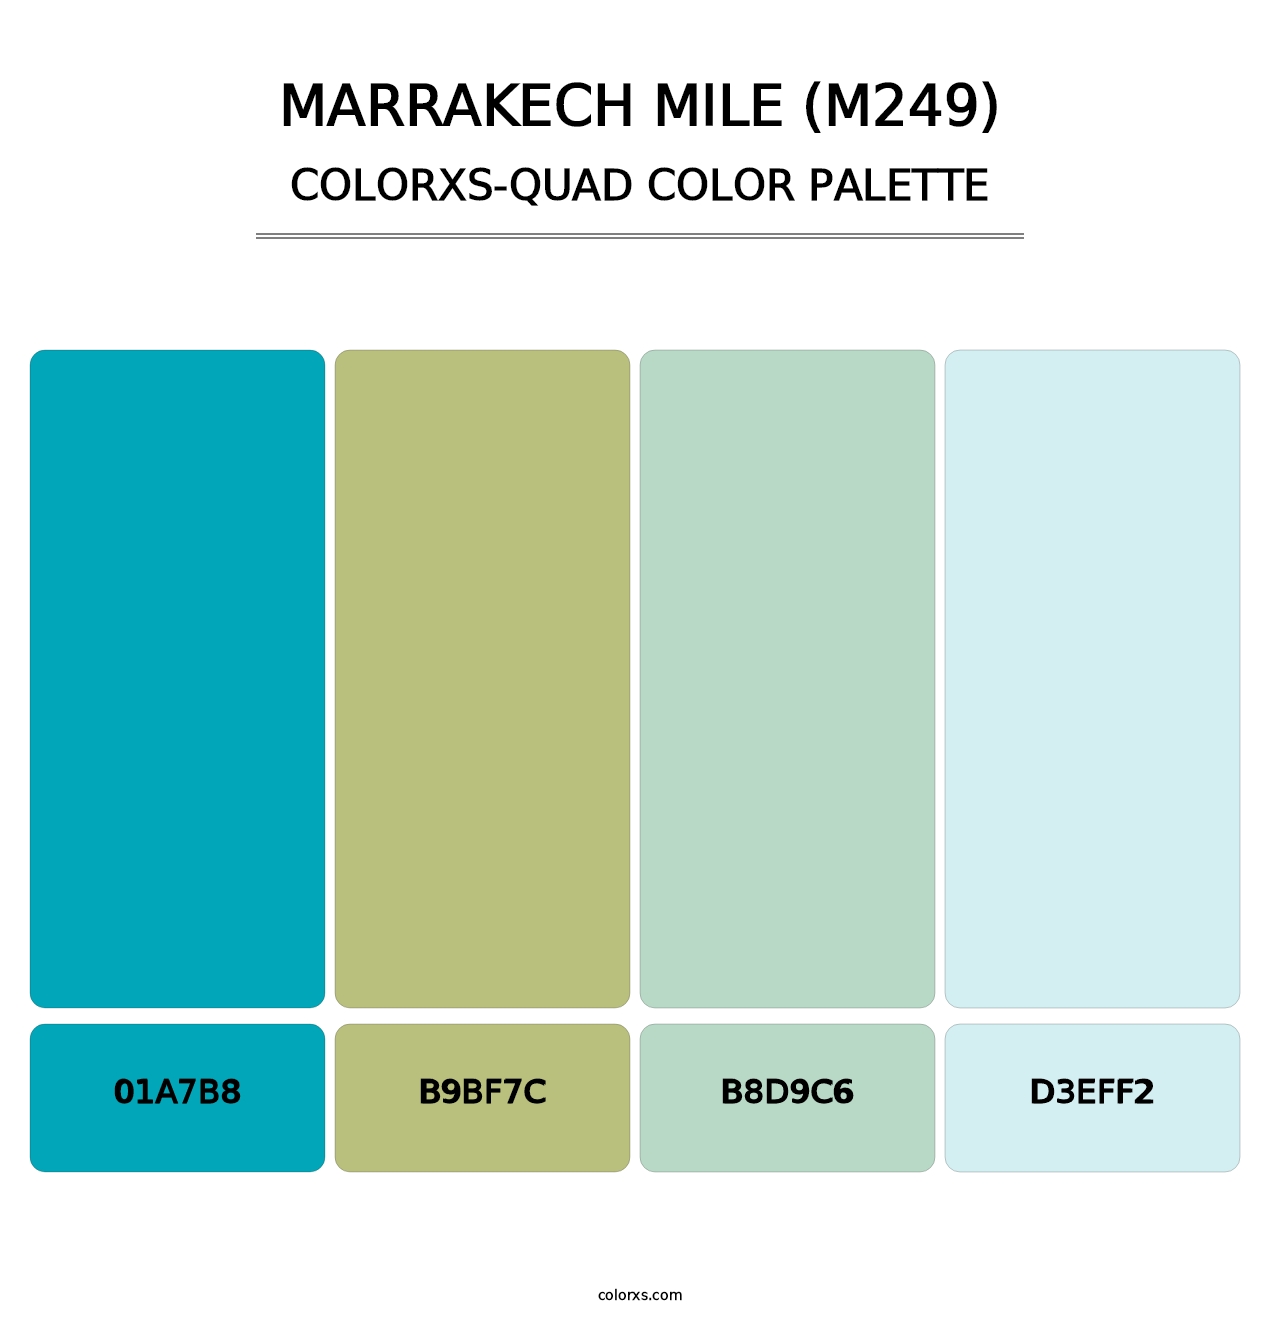 Marrakech Mile (M249) - Colorxs Quad Palette